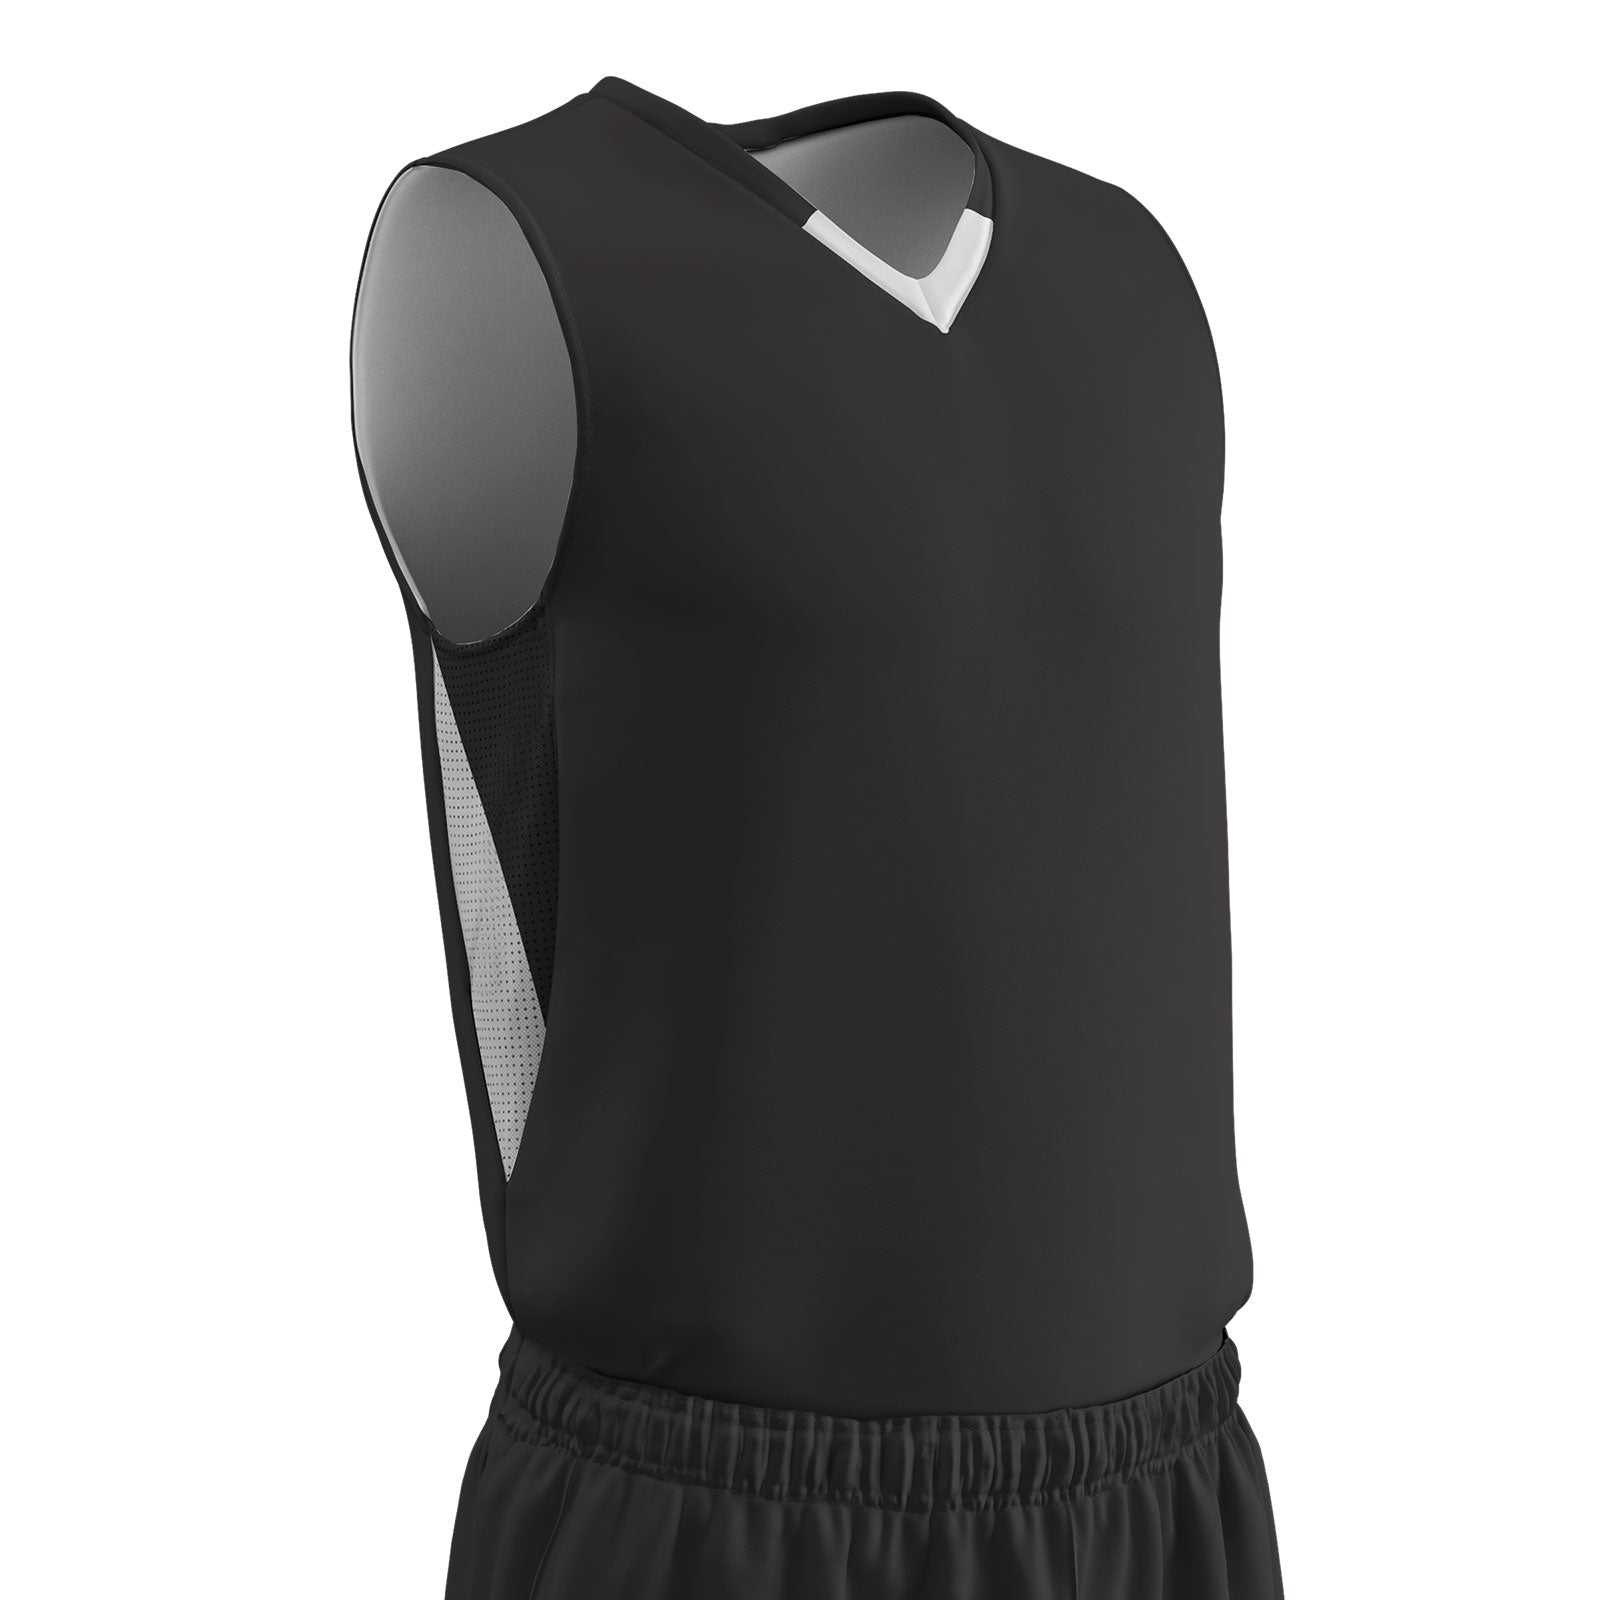 Champro BBJ14 Pivot Reversible Basketball Jersey - Black White - HIT a Double